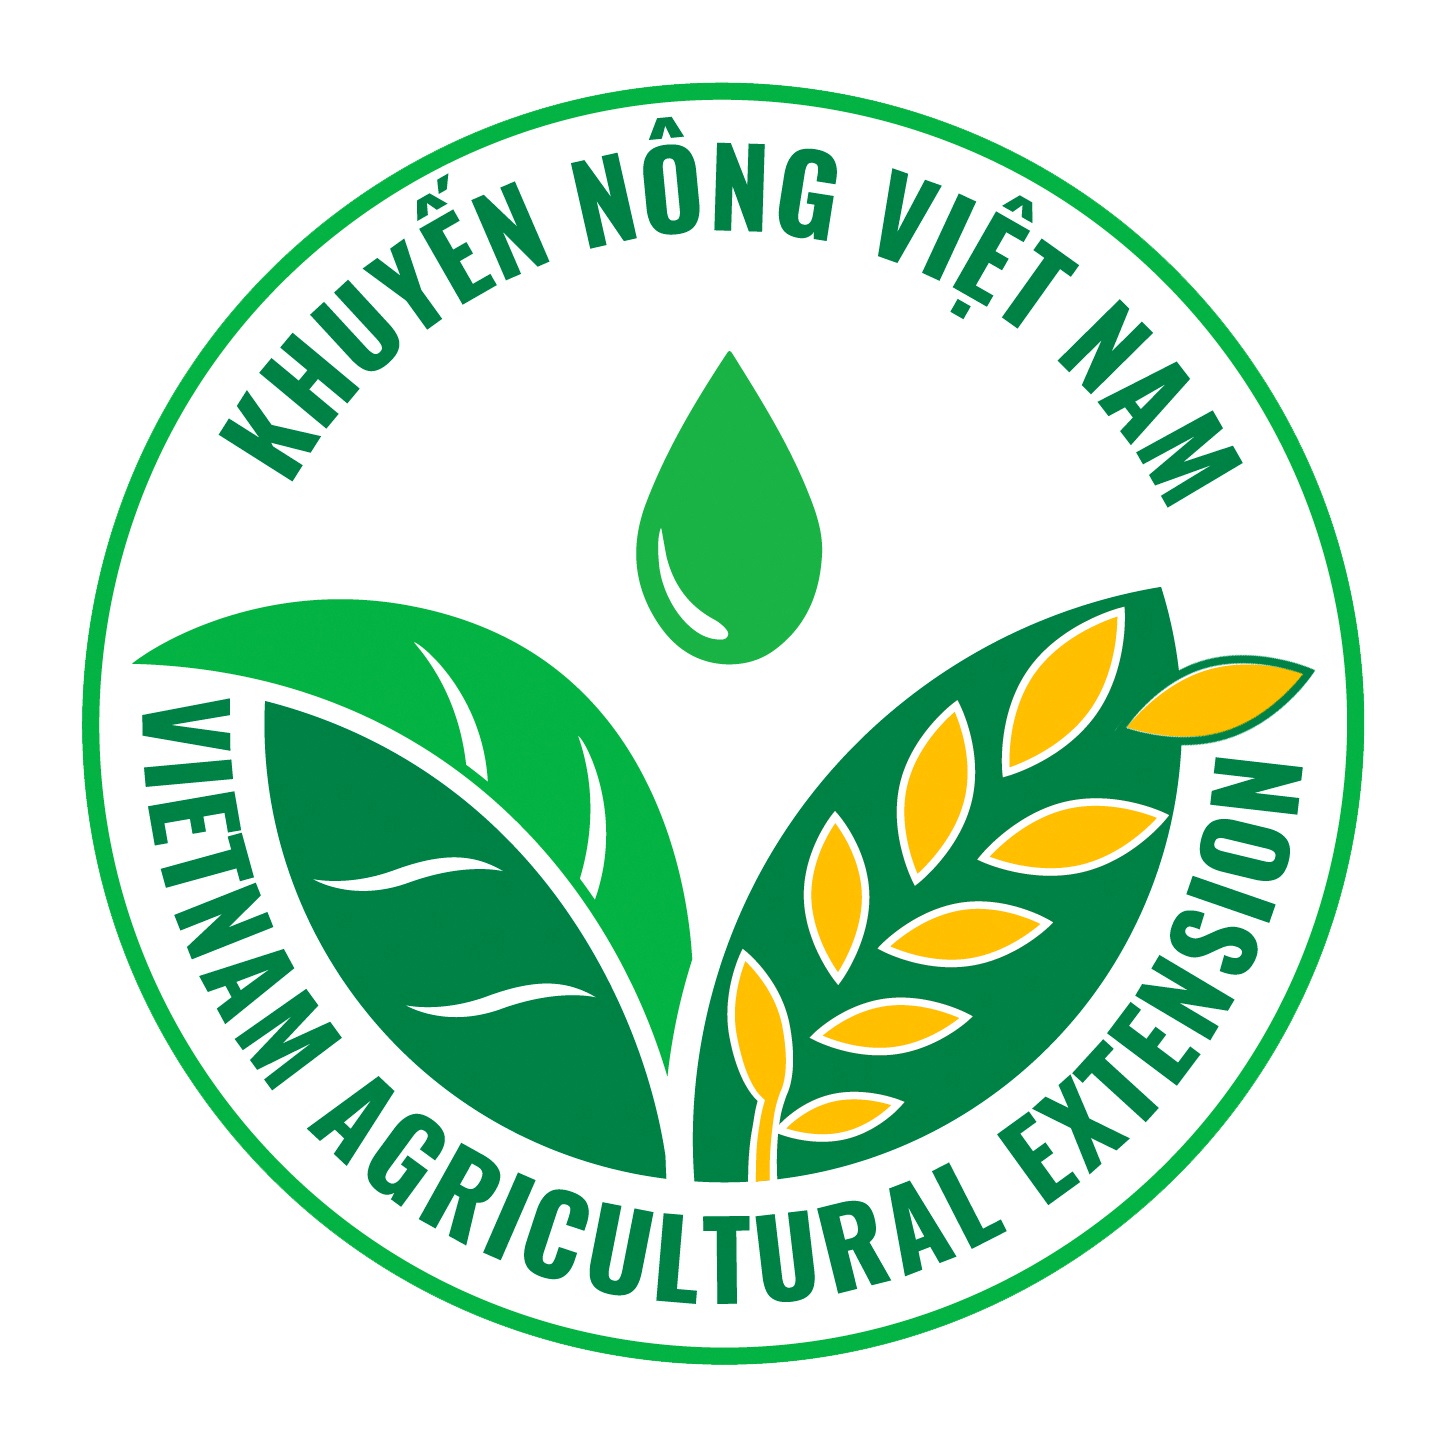 Giấy mời số 17/GM-KN-TCHC tham dự Hội nghị đổi mới công tác khuyến nông